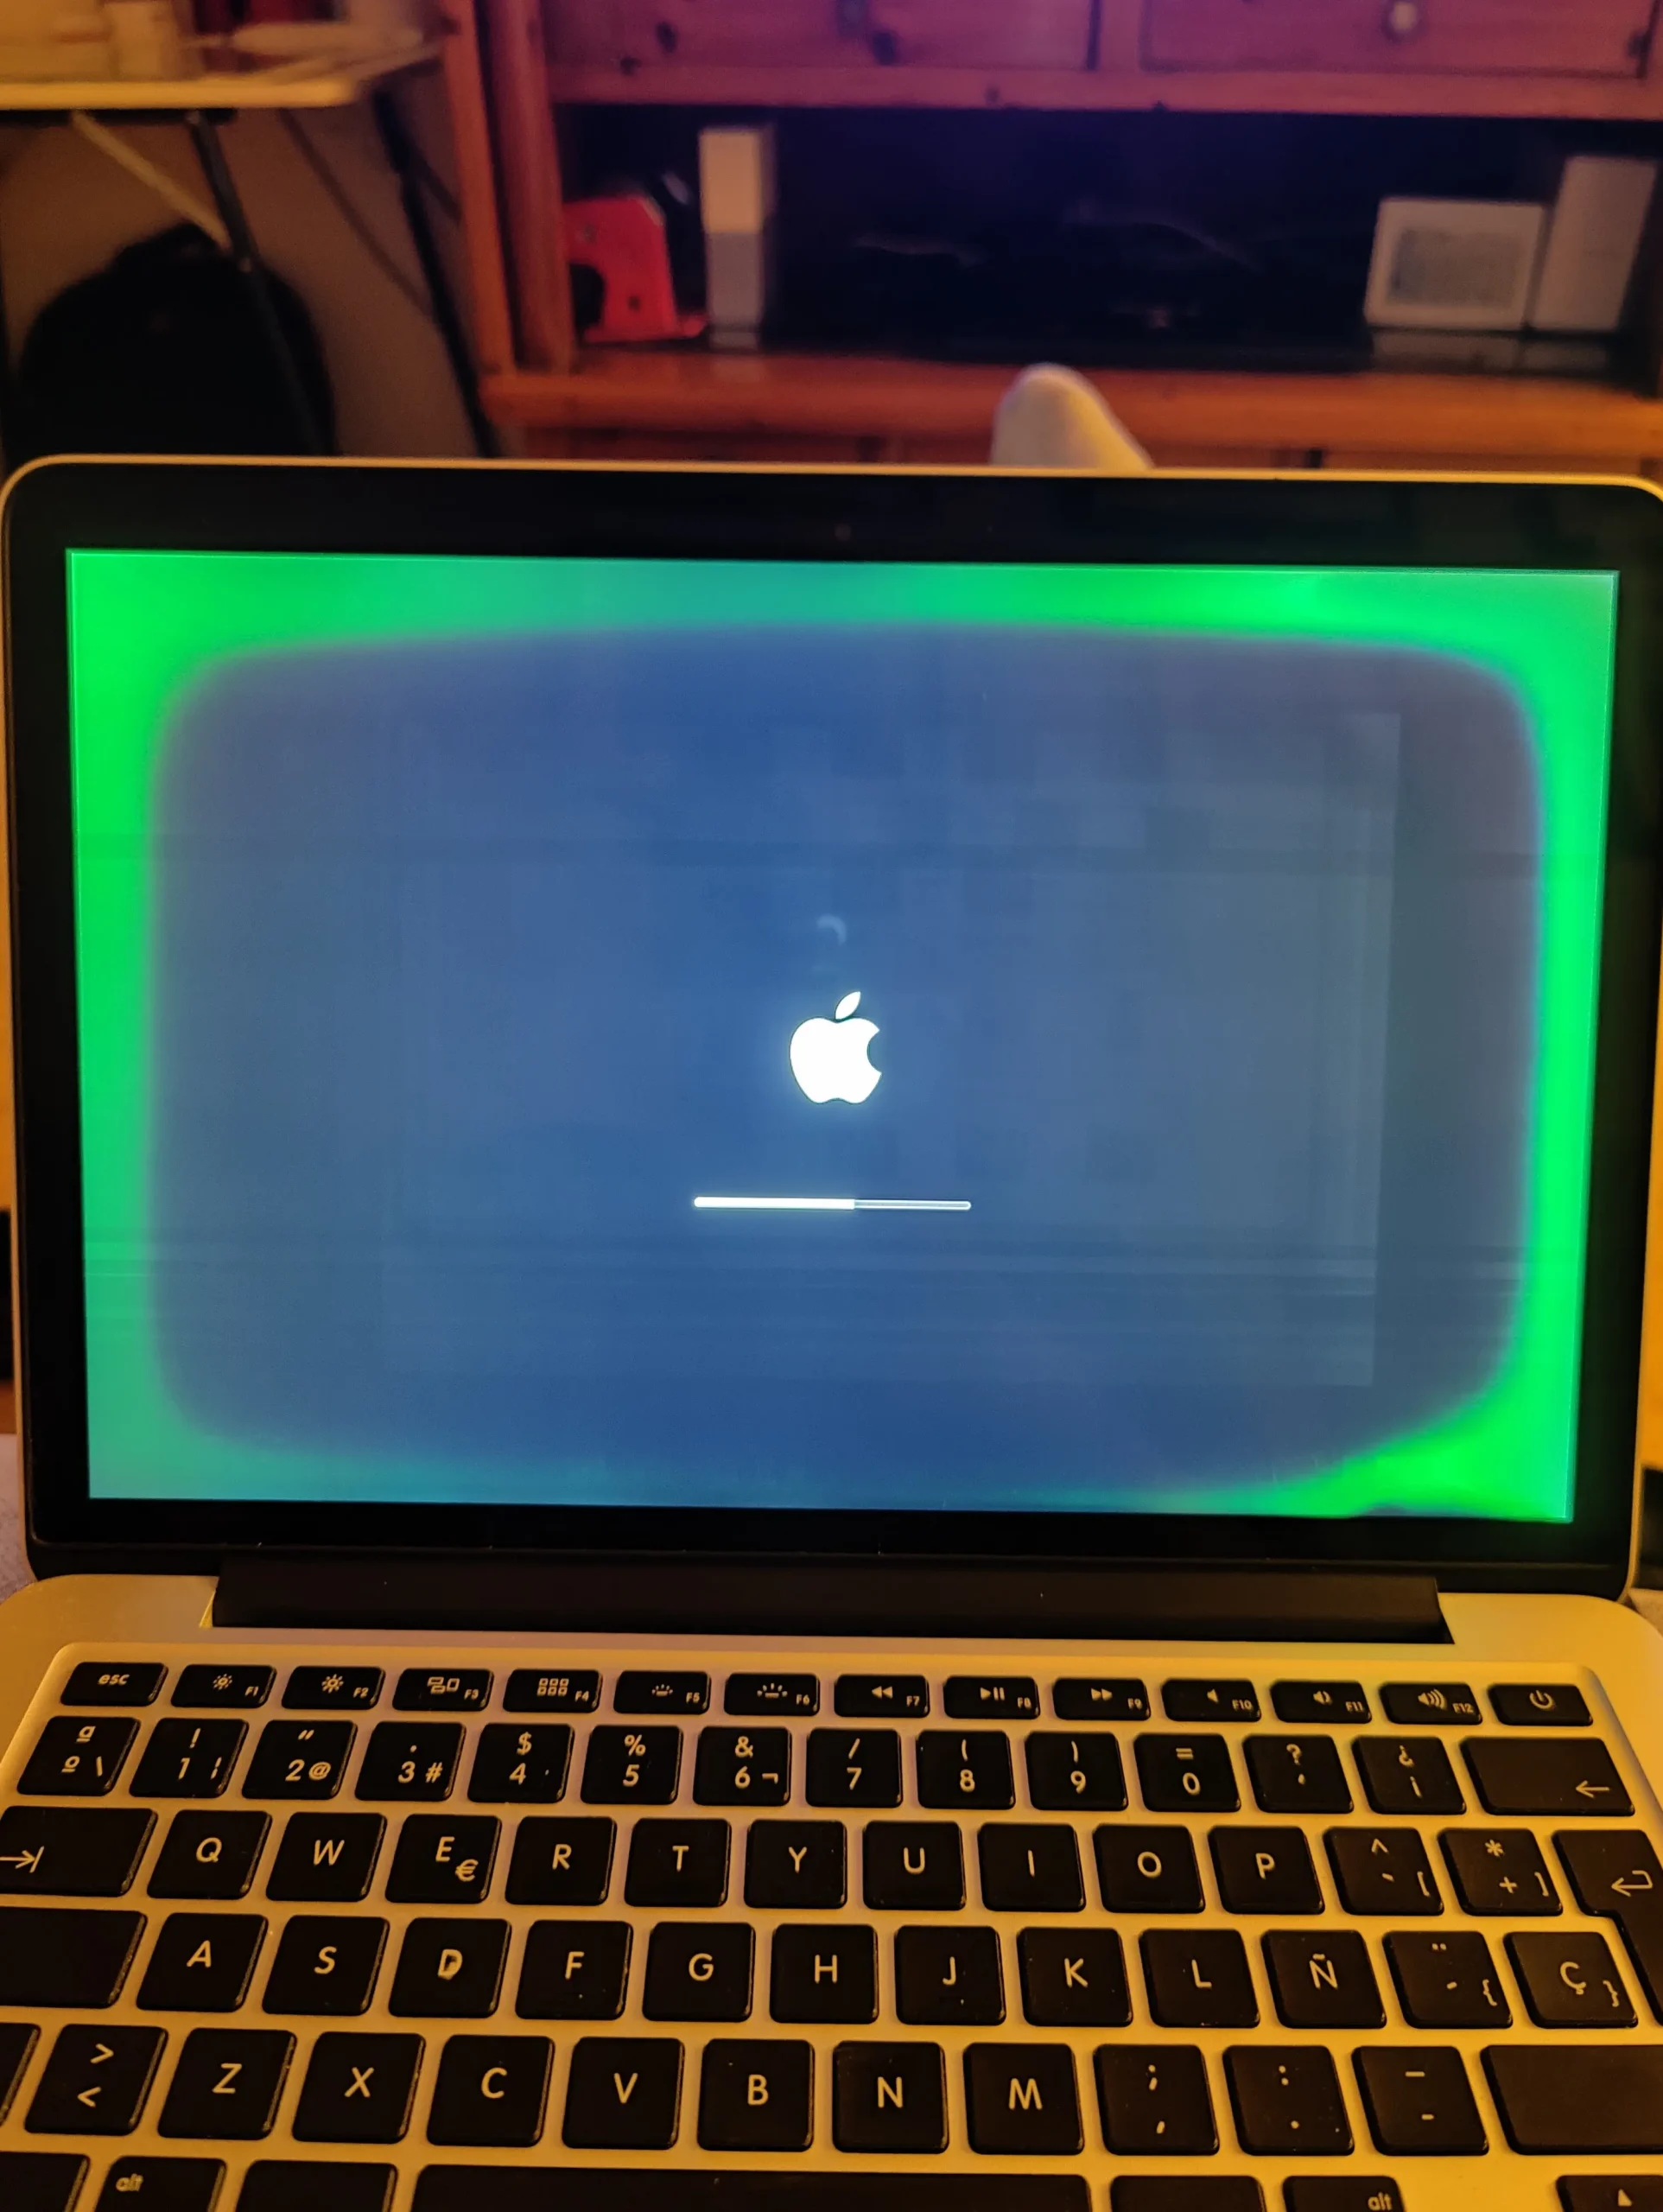 pantalla verde mac - Por qué la pantalla de mi Mac se pone verde